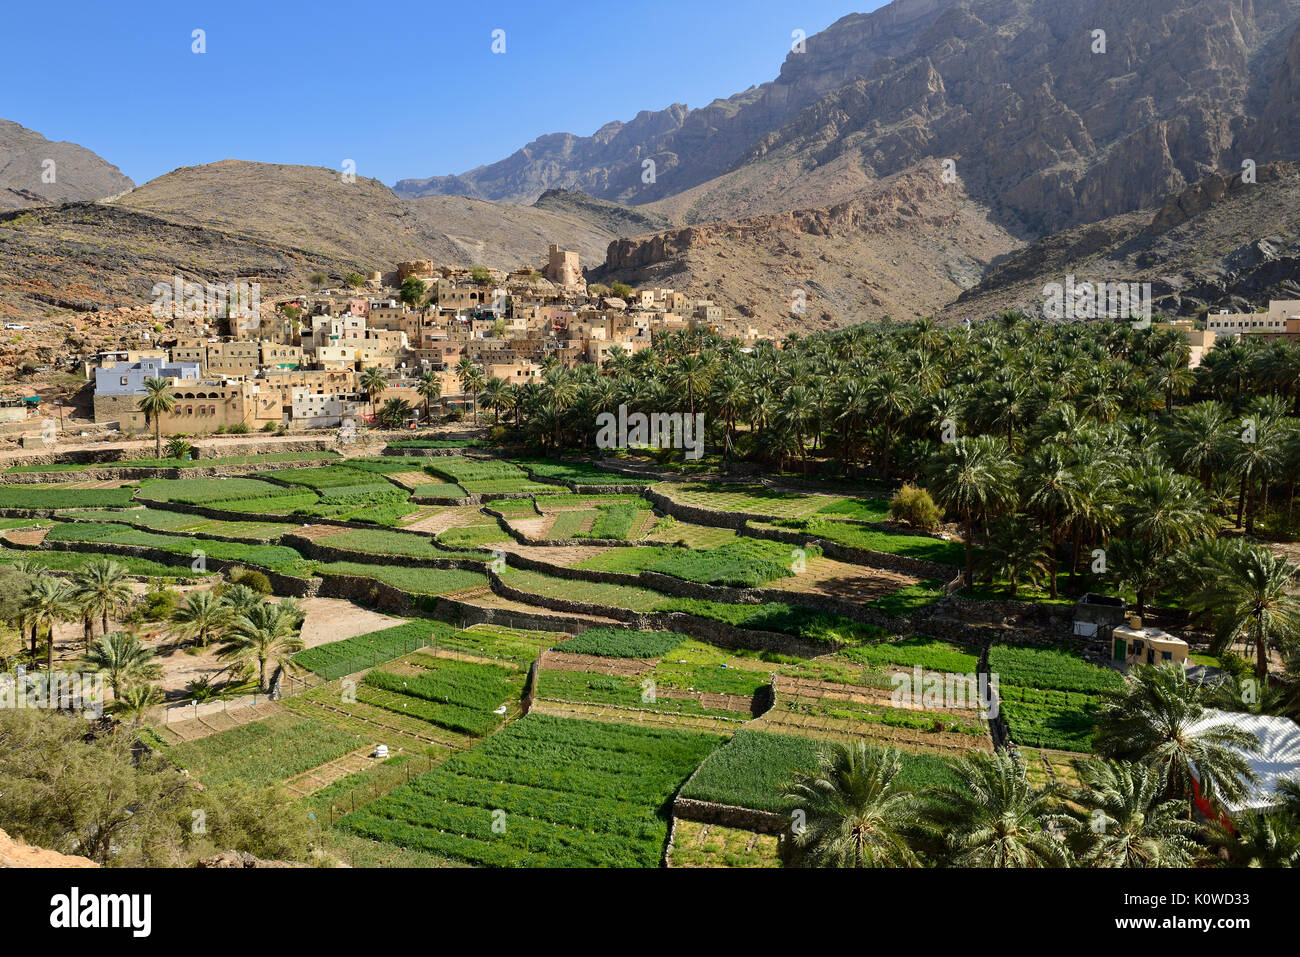 Pueblo de Balad Sayt, Hayar al Gharbi montañas, Dakhiliyah, Omán Foto de stock